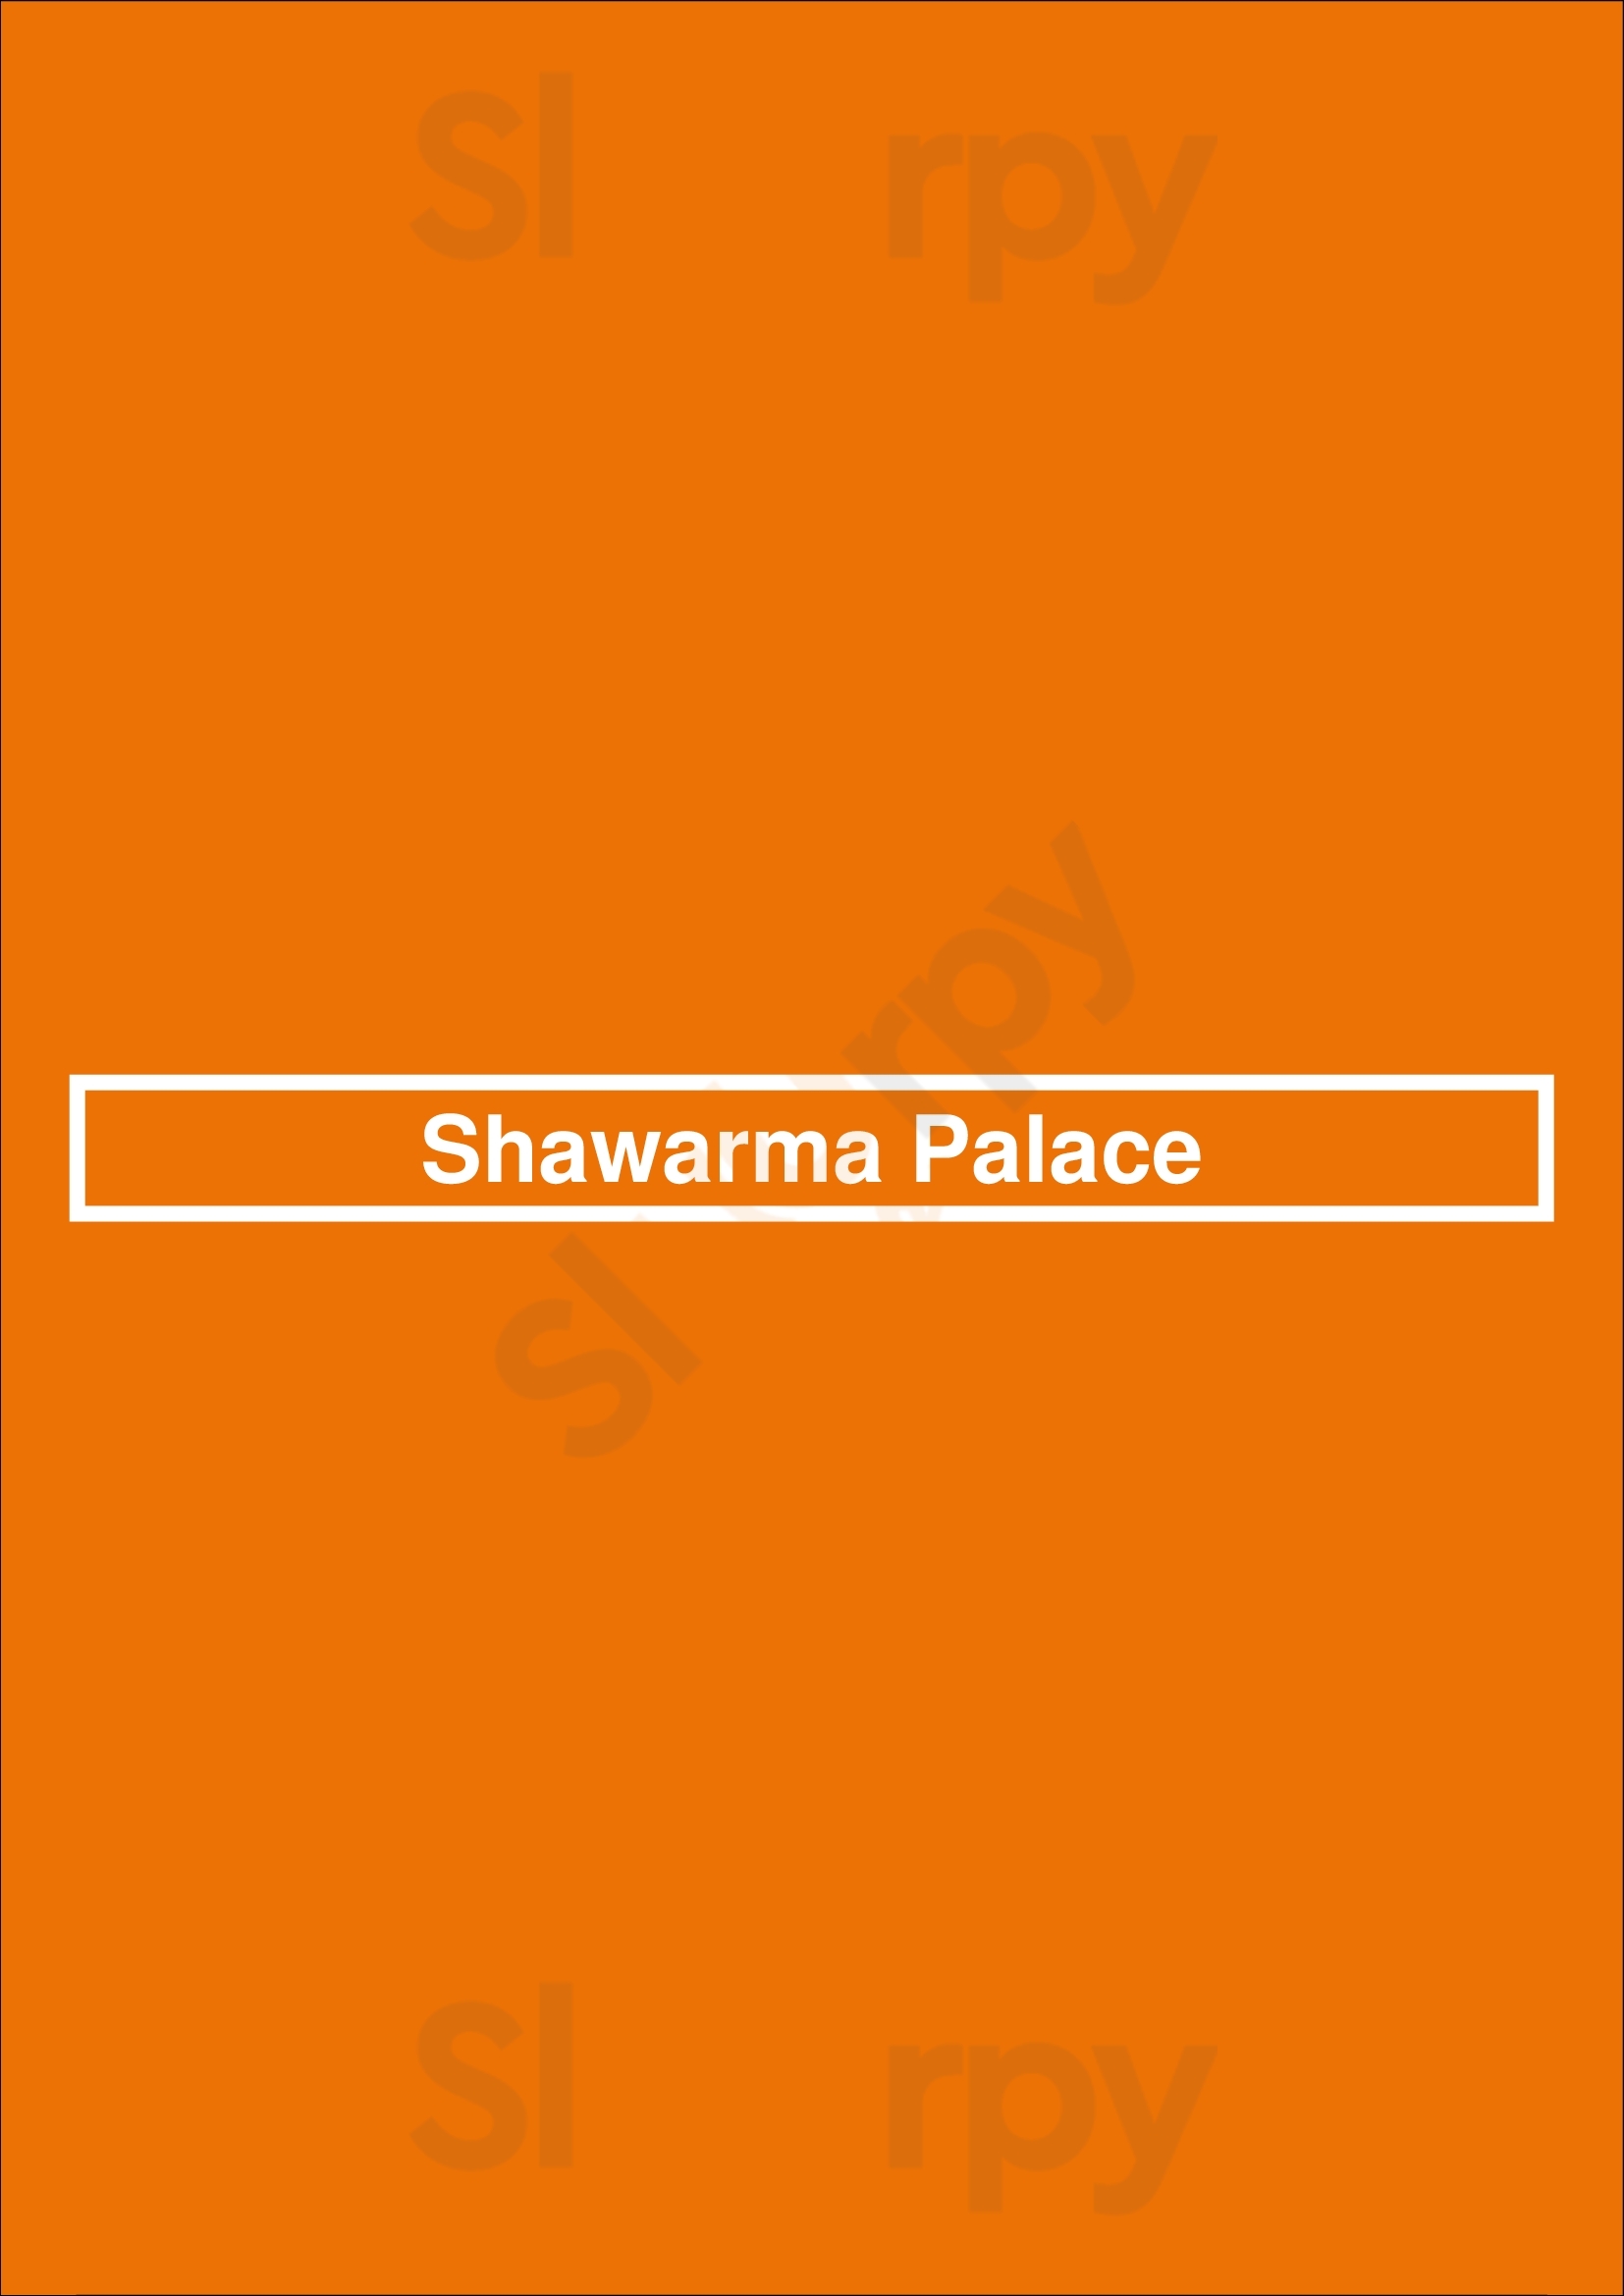 Shawarma Palace Richmond Menu - 1